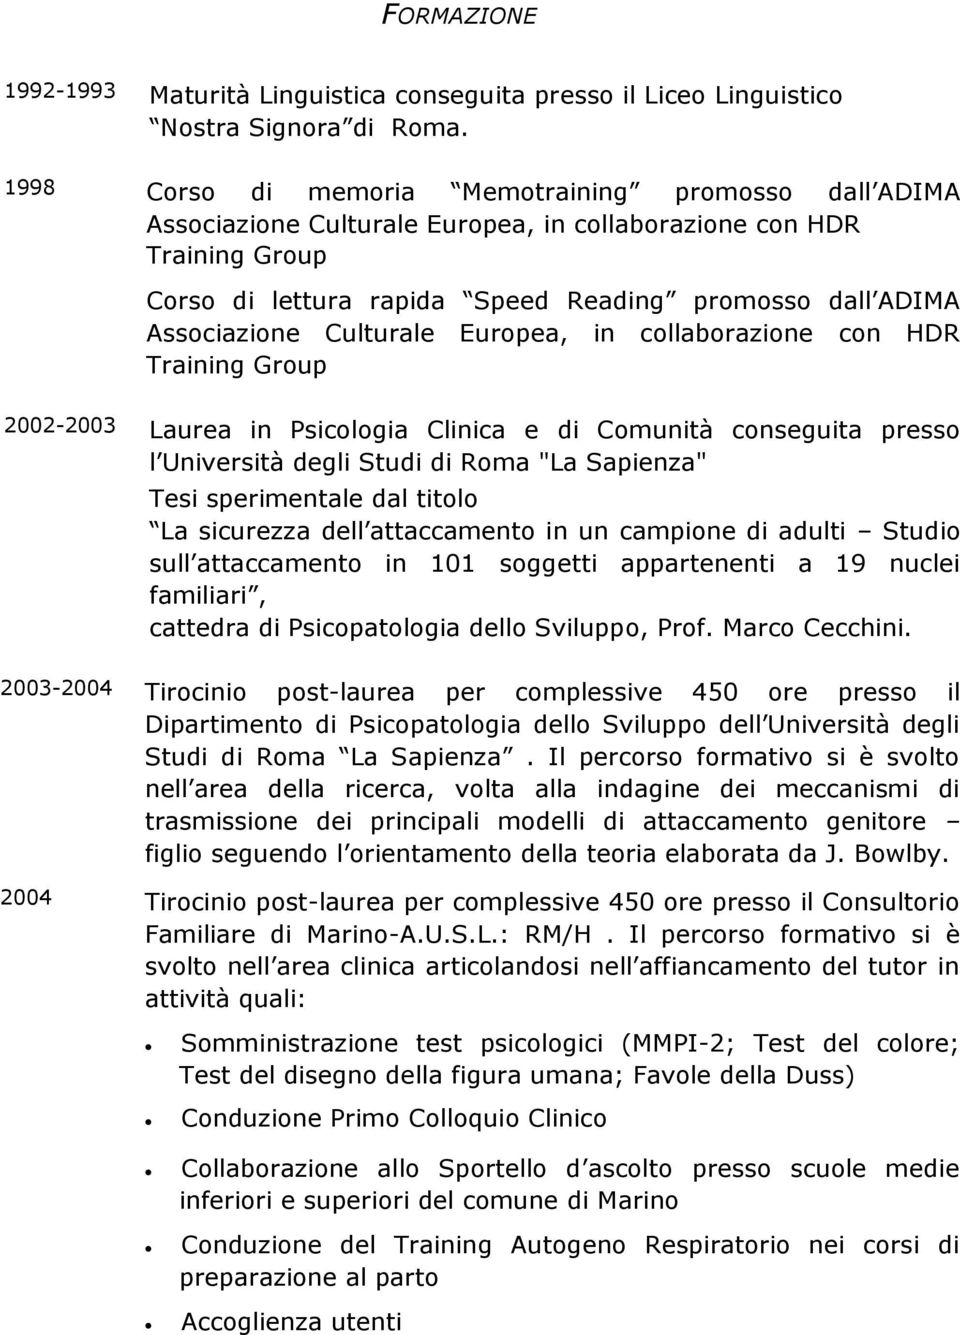 Culturale Europea, in collaborazione con HDR Training Group 2002-2003 Laurea in Psicologia Clinica e di Comunità conseguita presso l Università degli Studi di Roma "La Sapienza" Tesi sperimentale dal